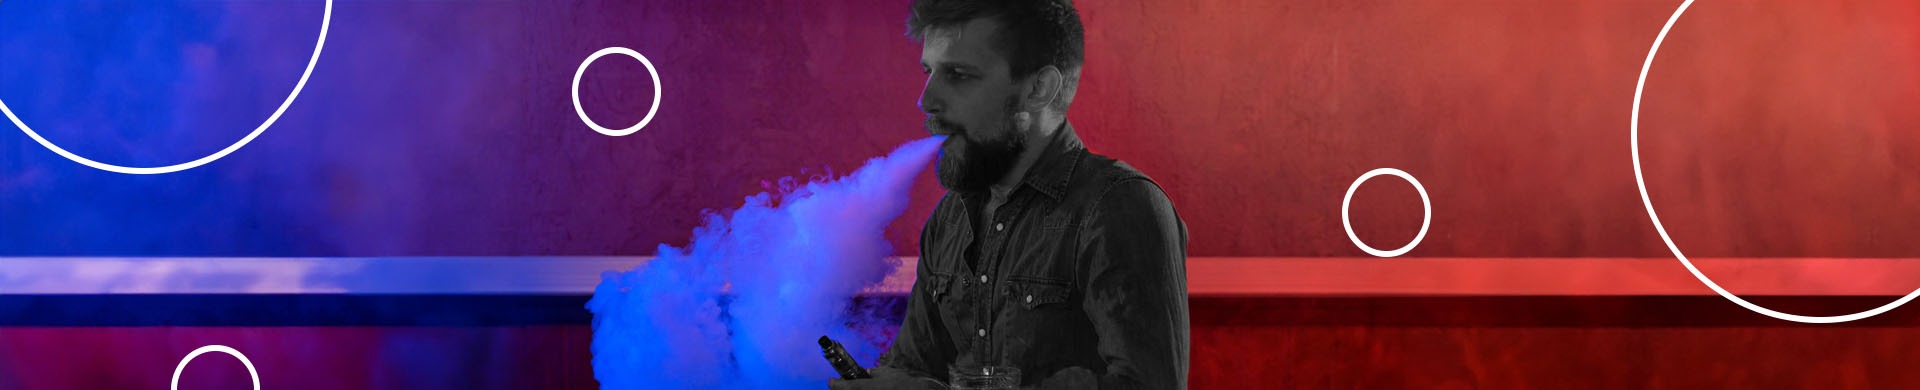 homem soltando vapor gerado pelo ato de fumar cigarro eletrônico